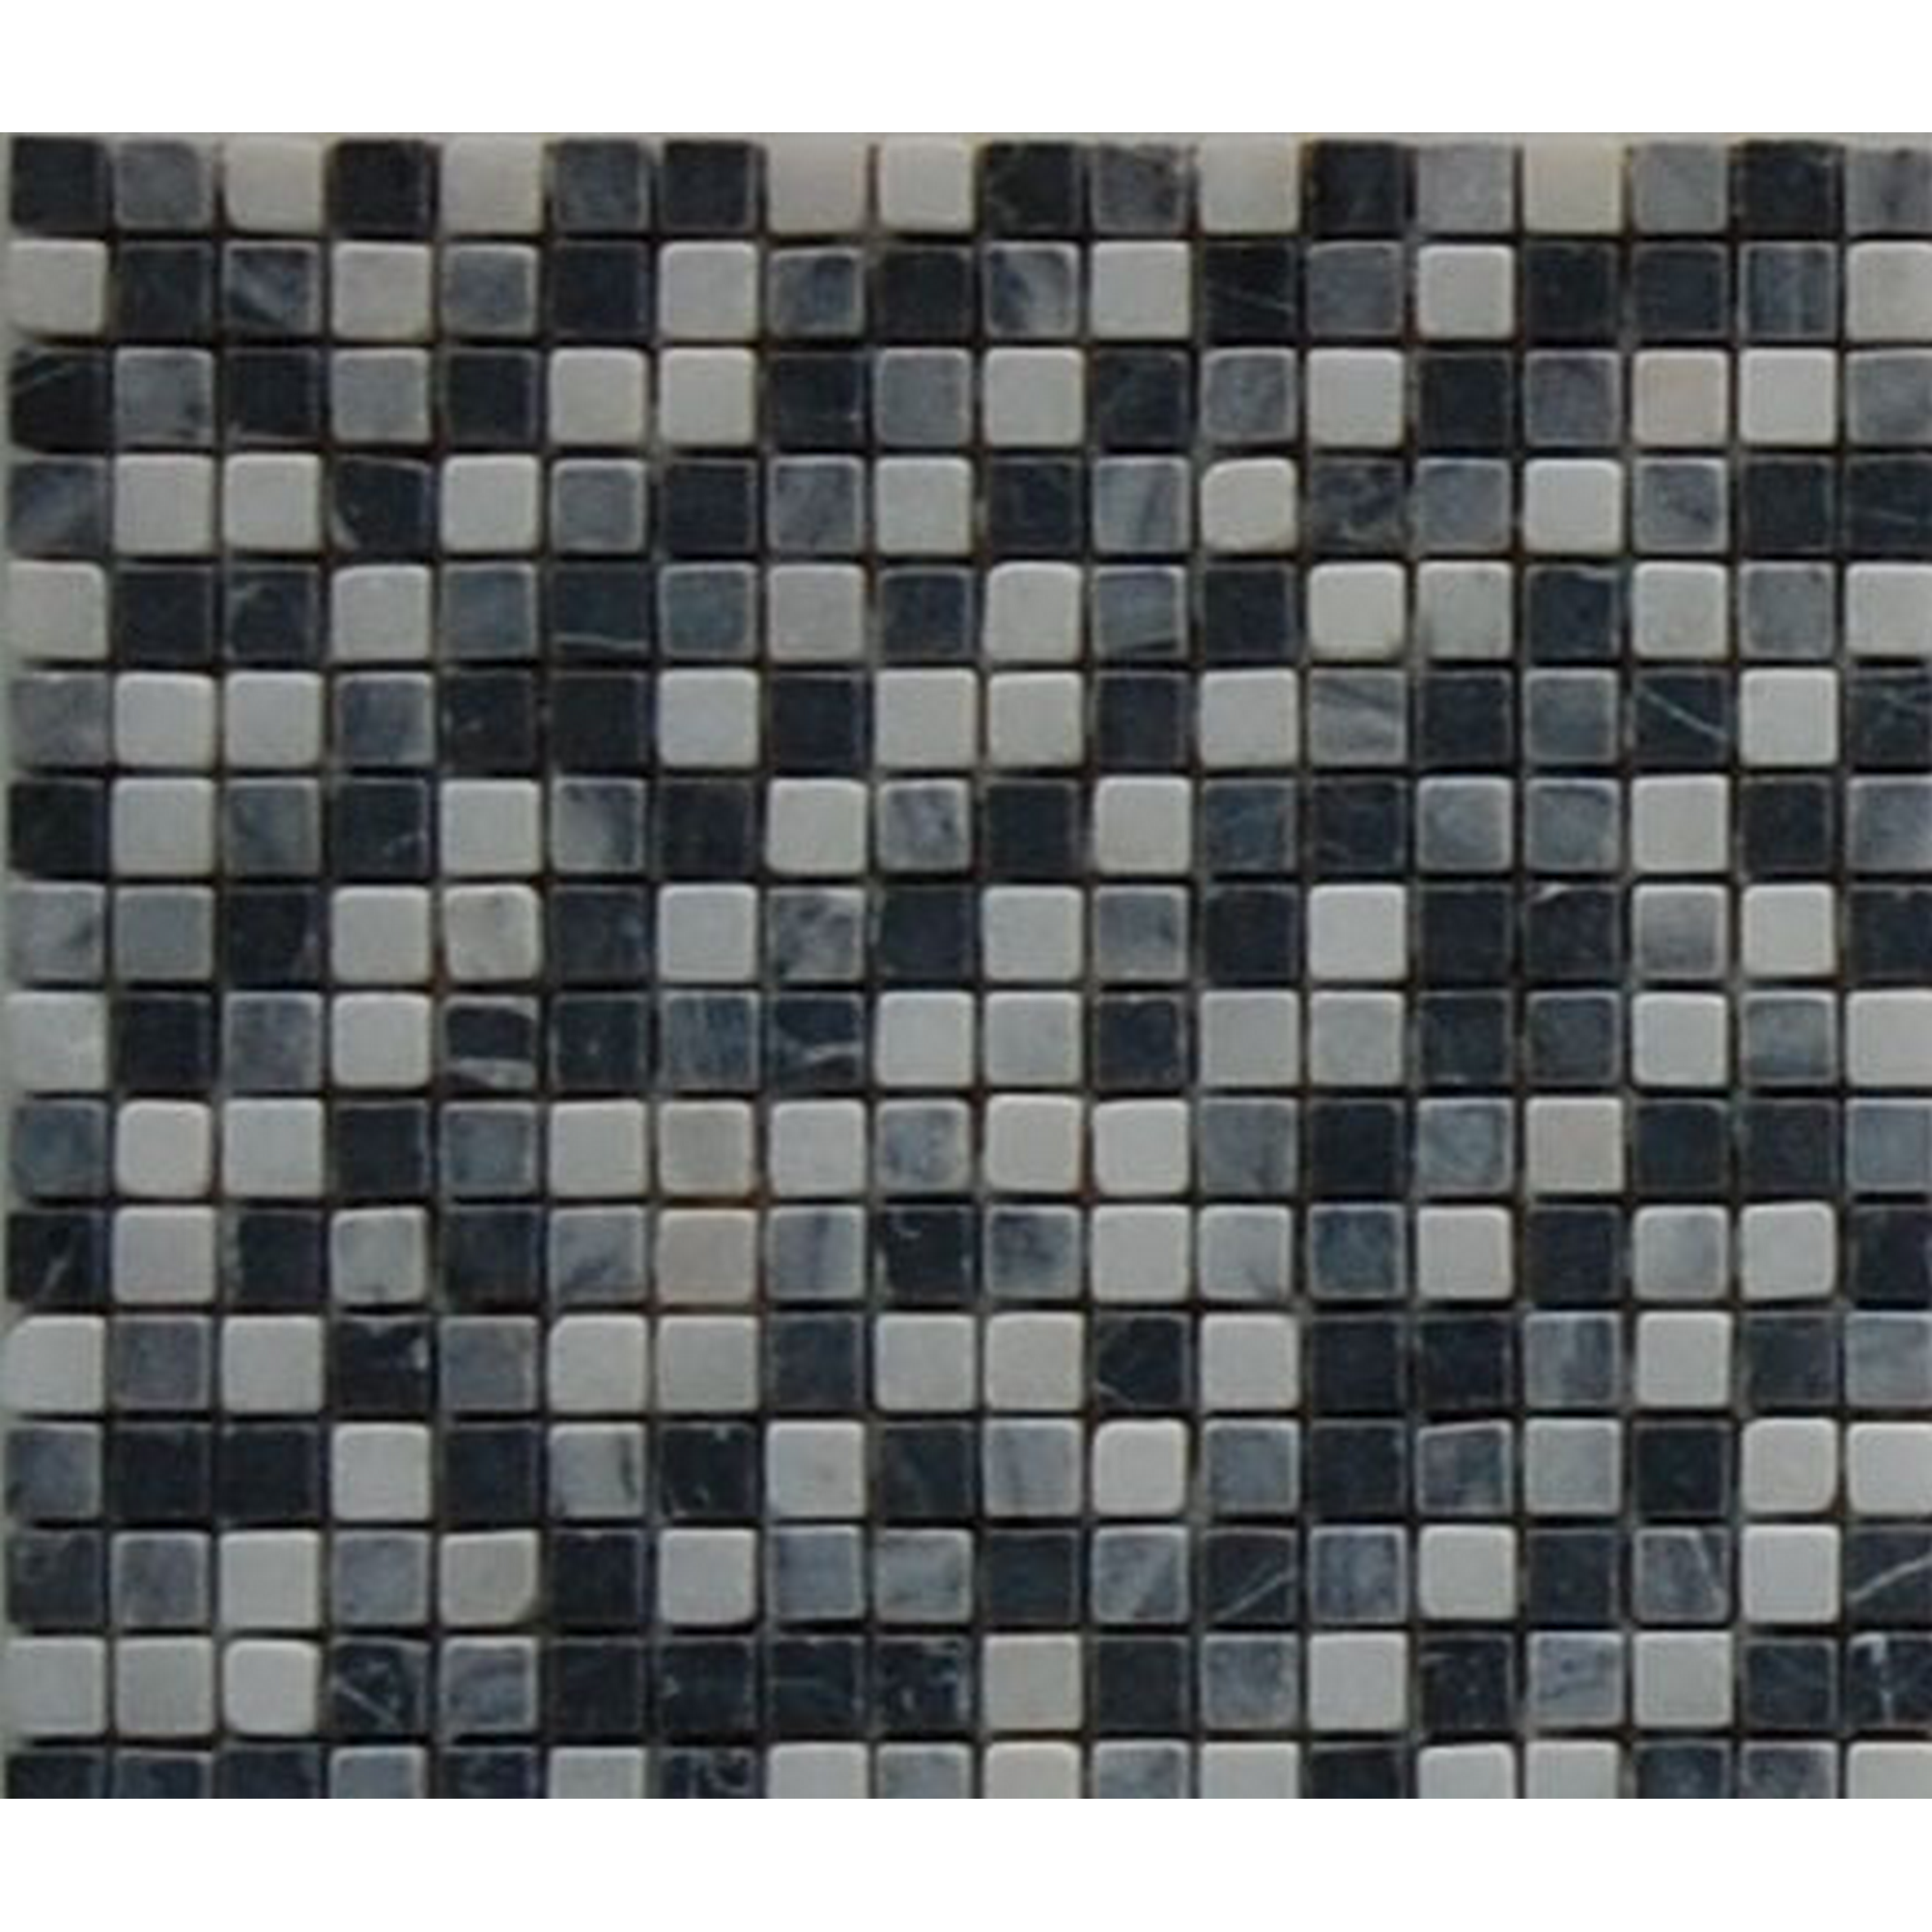 Mosaikfliese 'Nero' Naturstein grau-schwarz 30 x 30 cm + product picture